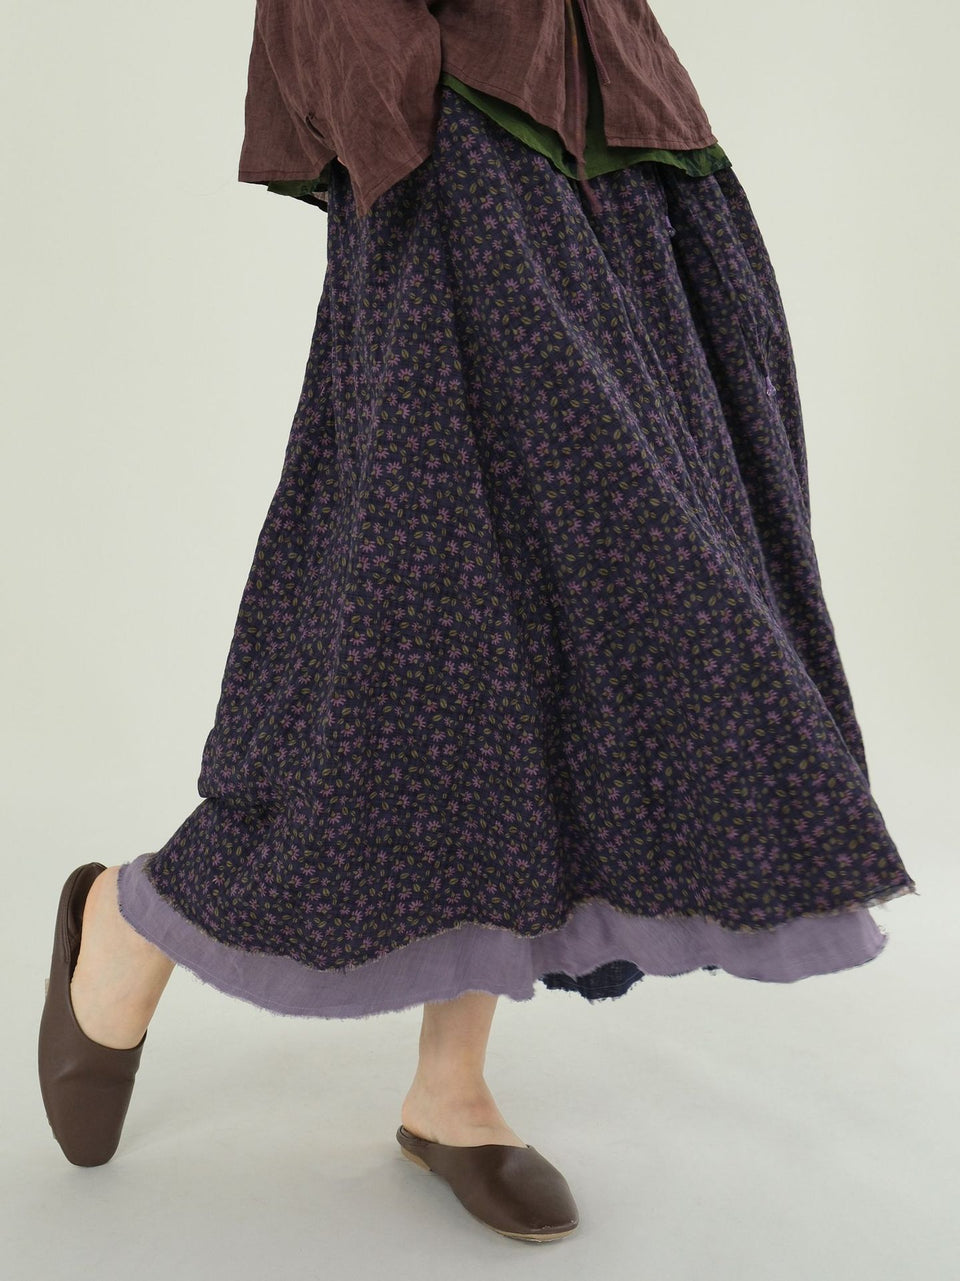 Original vintage art purple floral big swing double layer cotton skirt